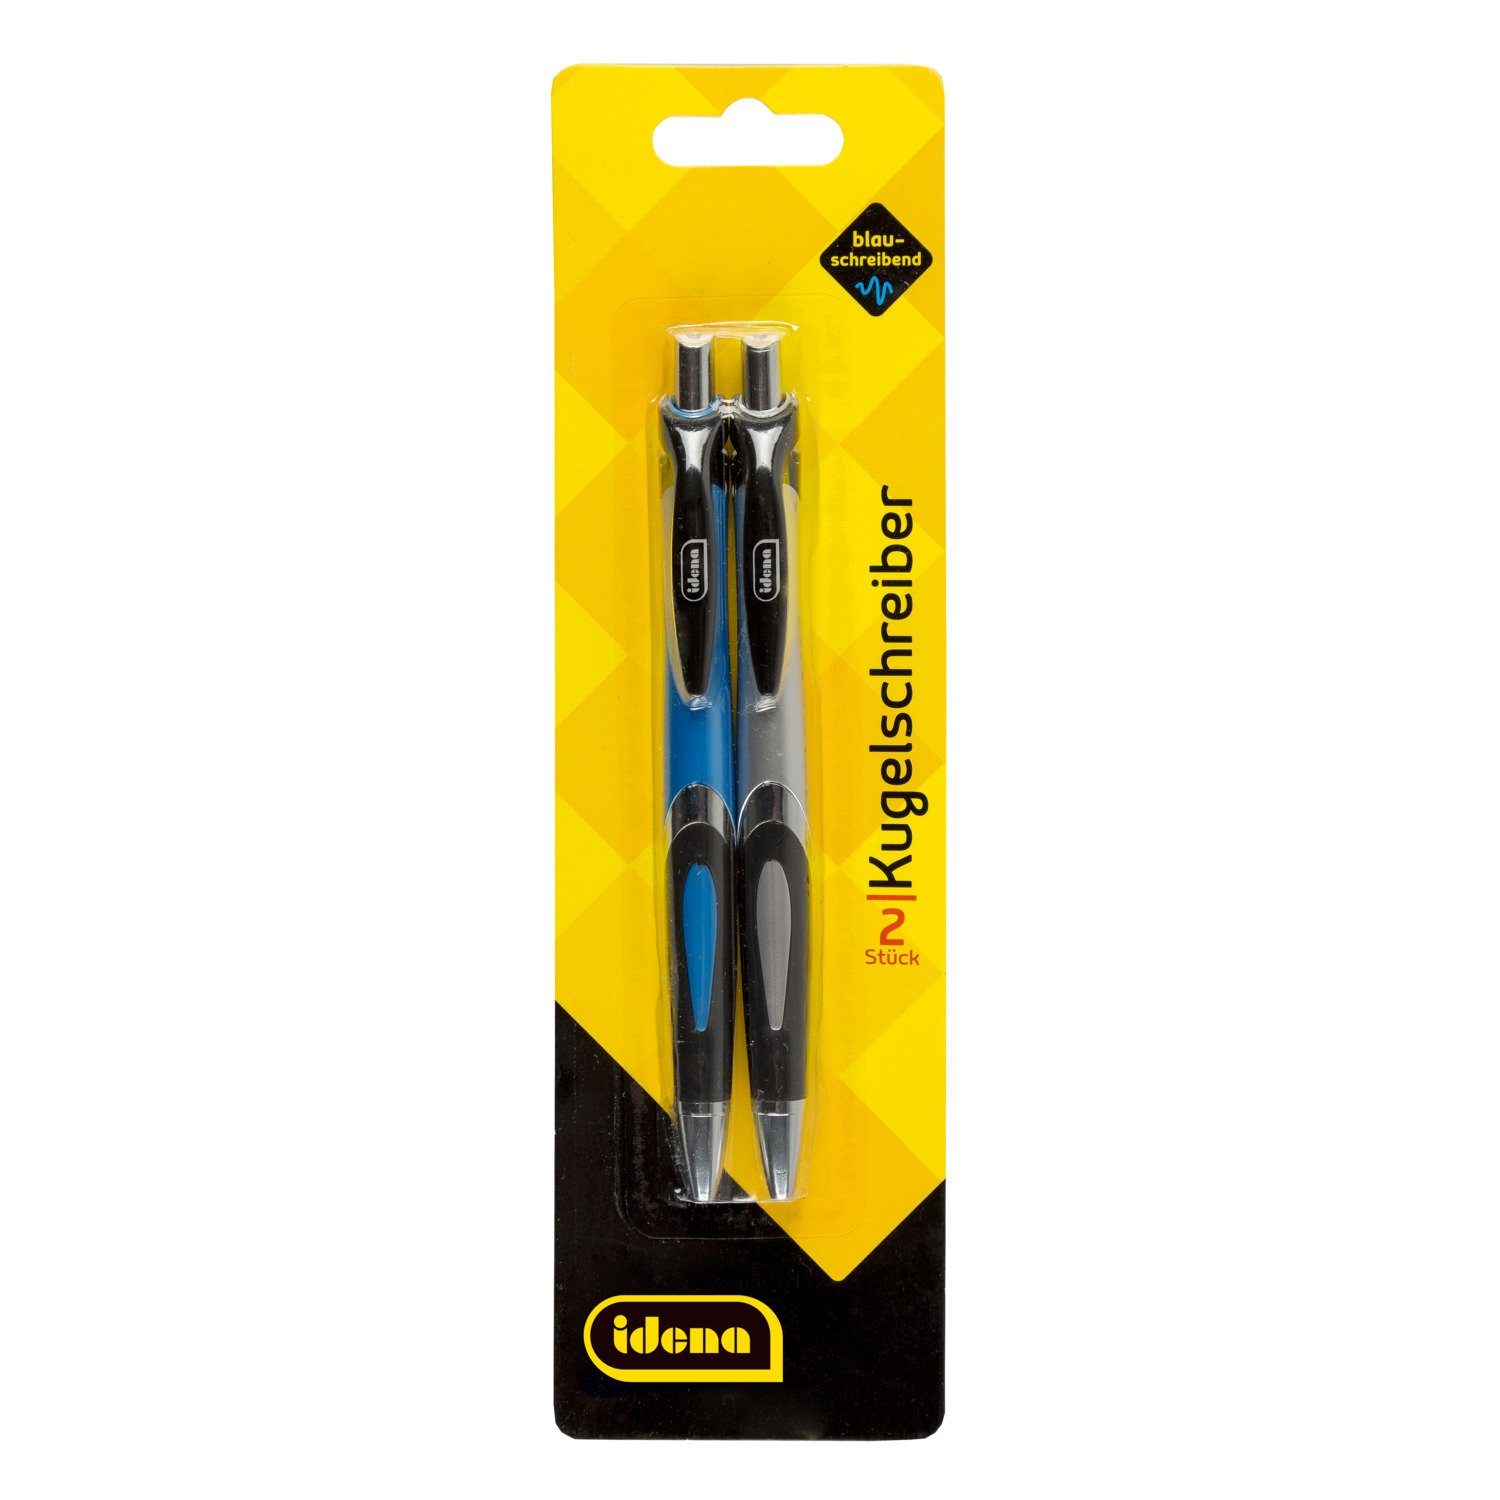 Idena Kugelschreiber Idena 512405 - Stück, und blau Druckkugelschreiber, silber 2